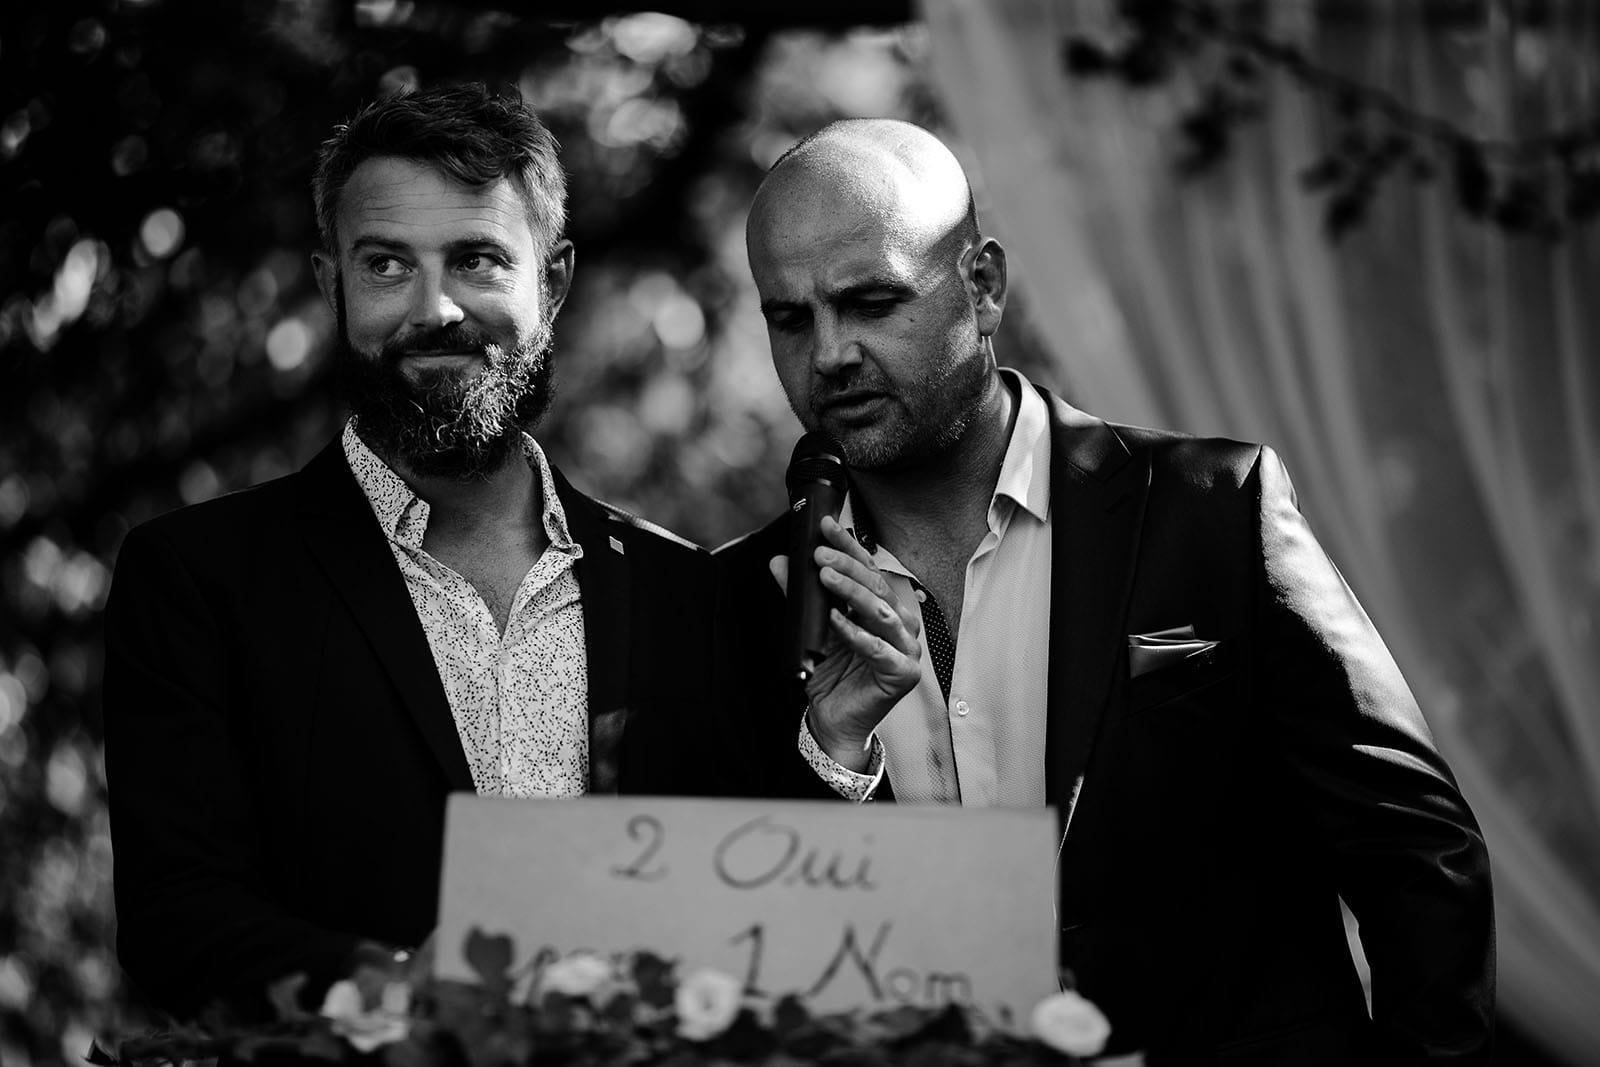 photographe de mariage Saint Etienne émotion joie bonheur cérémonie laique mariage champêtre